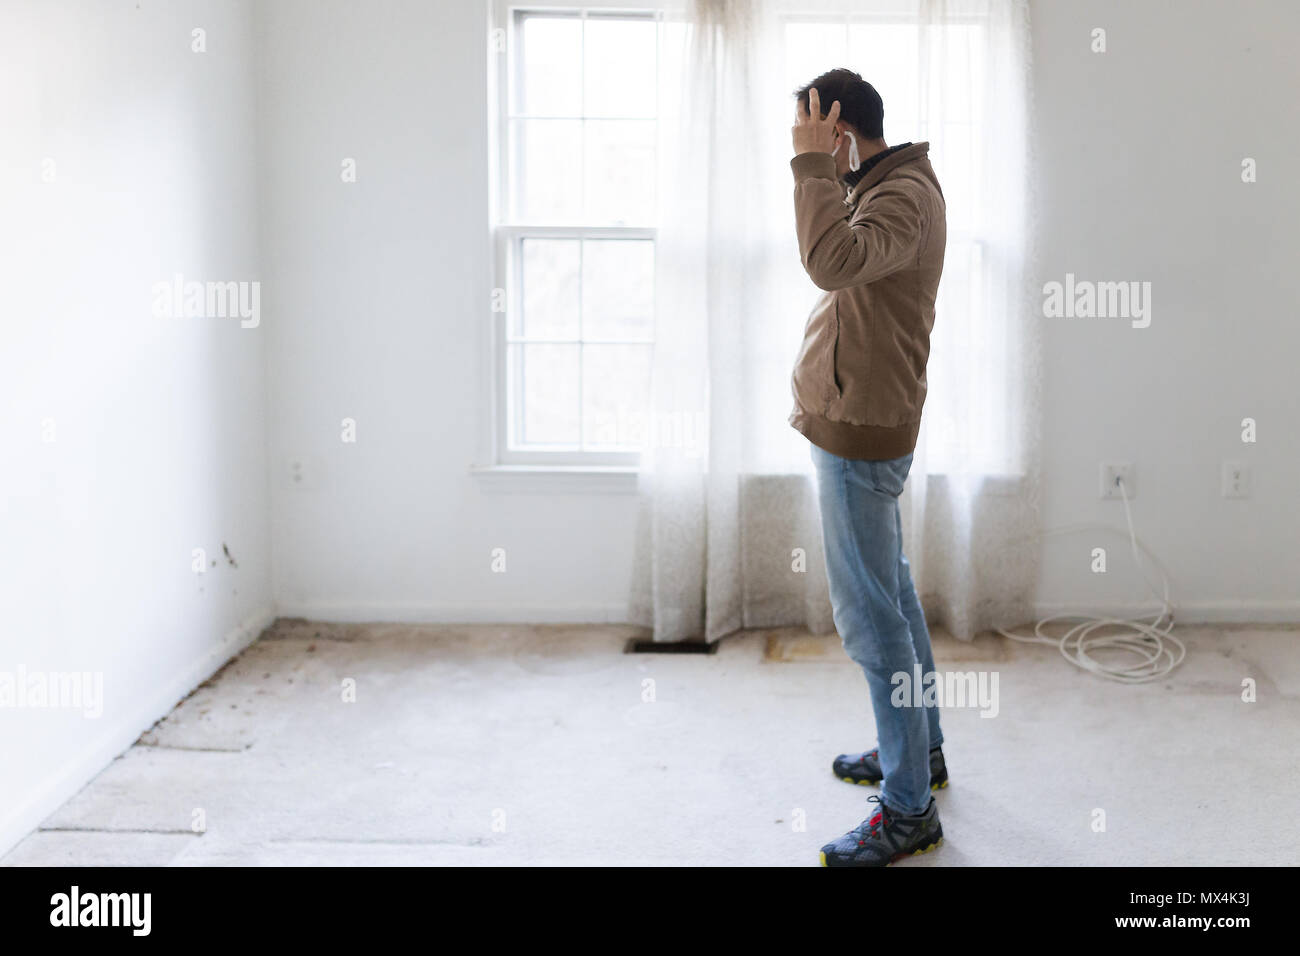 Masque de jeune homme dans l'article à un mur de la salle à la moquette au sol, murs peints en blanc, au cours de la rénovation rénovation, le nettoyage, l'inspection de la saleté Banque D'Images